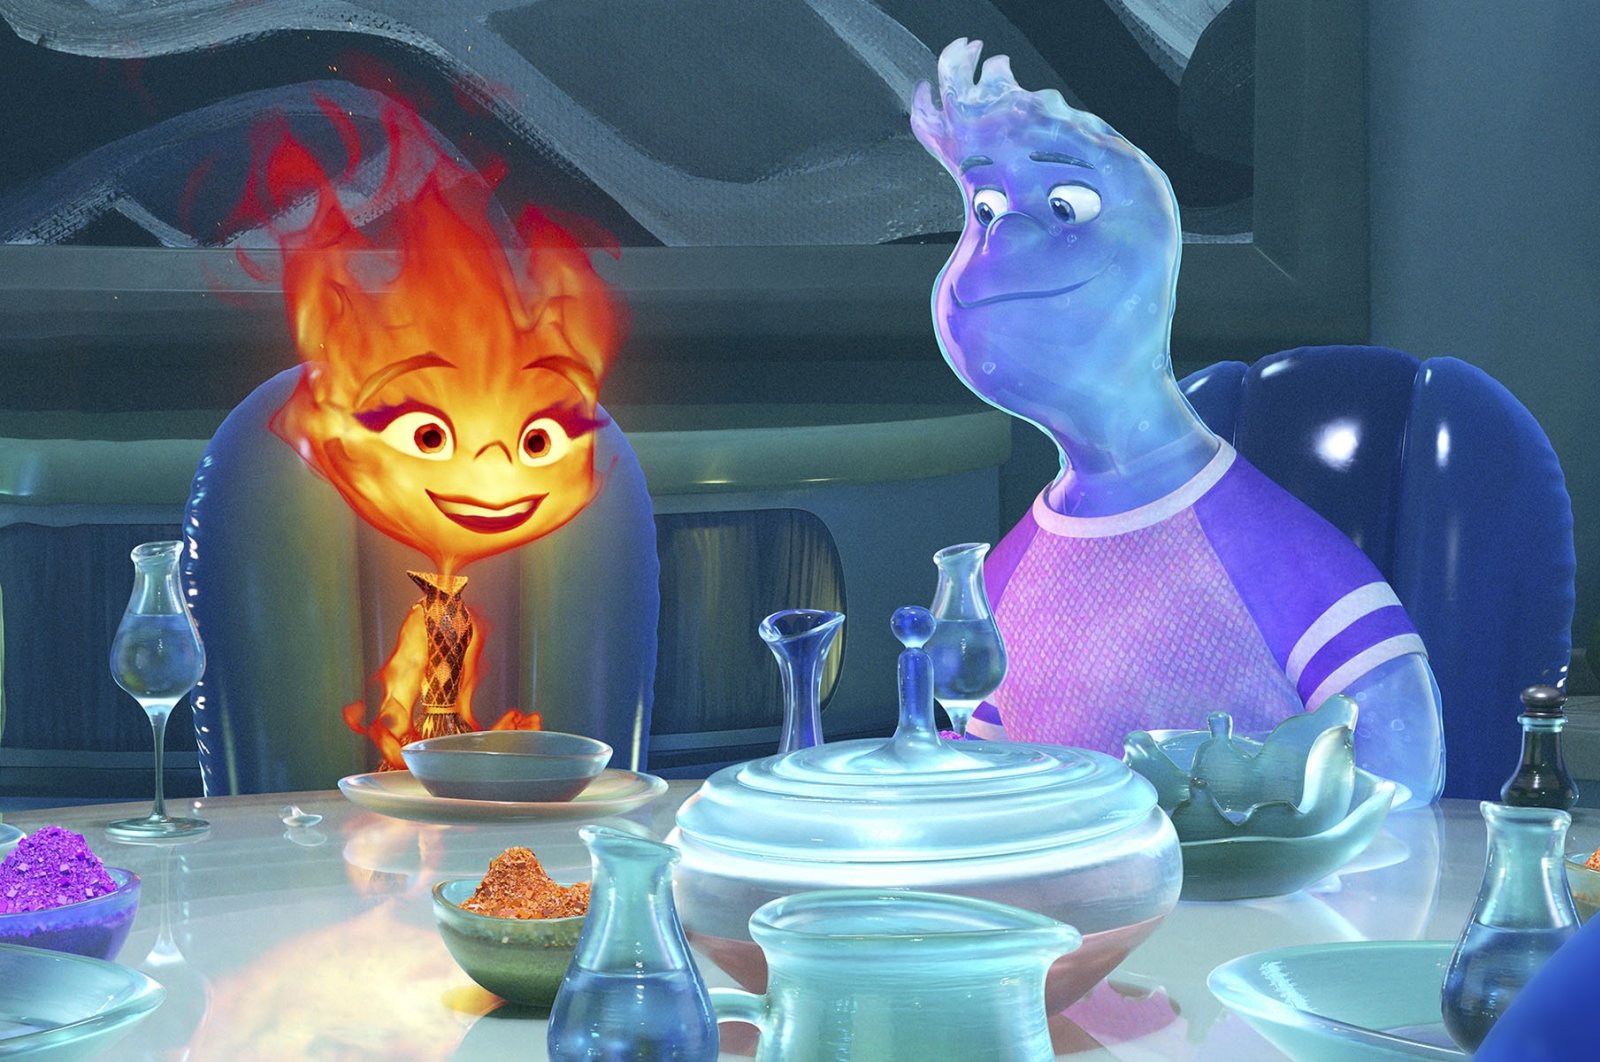 Keluarga, toleransi, imigrasi: Api, air di ‘Elemental’ Pixar